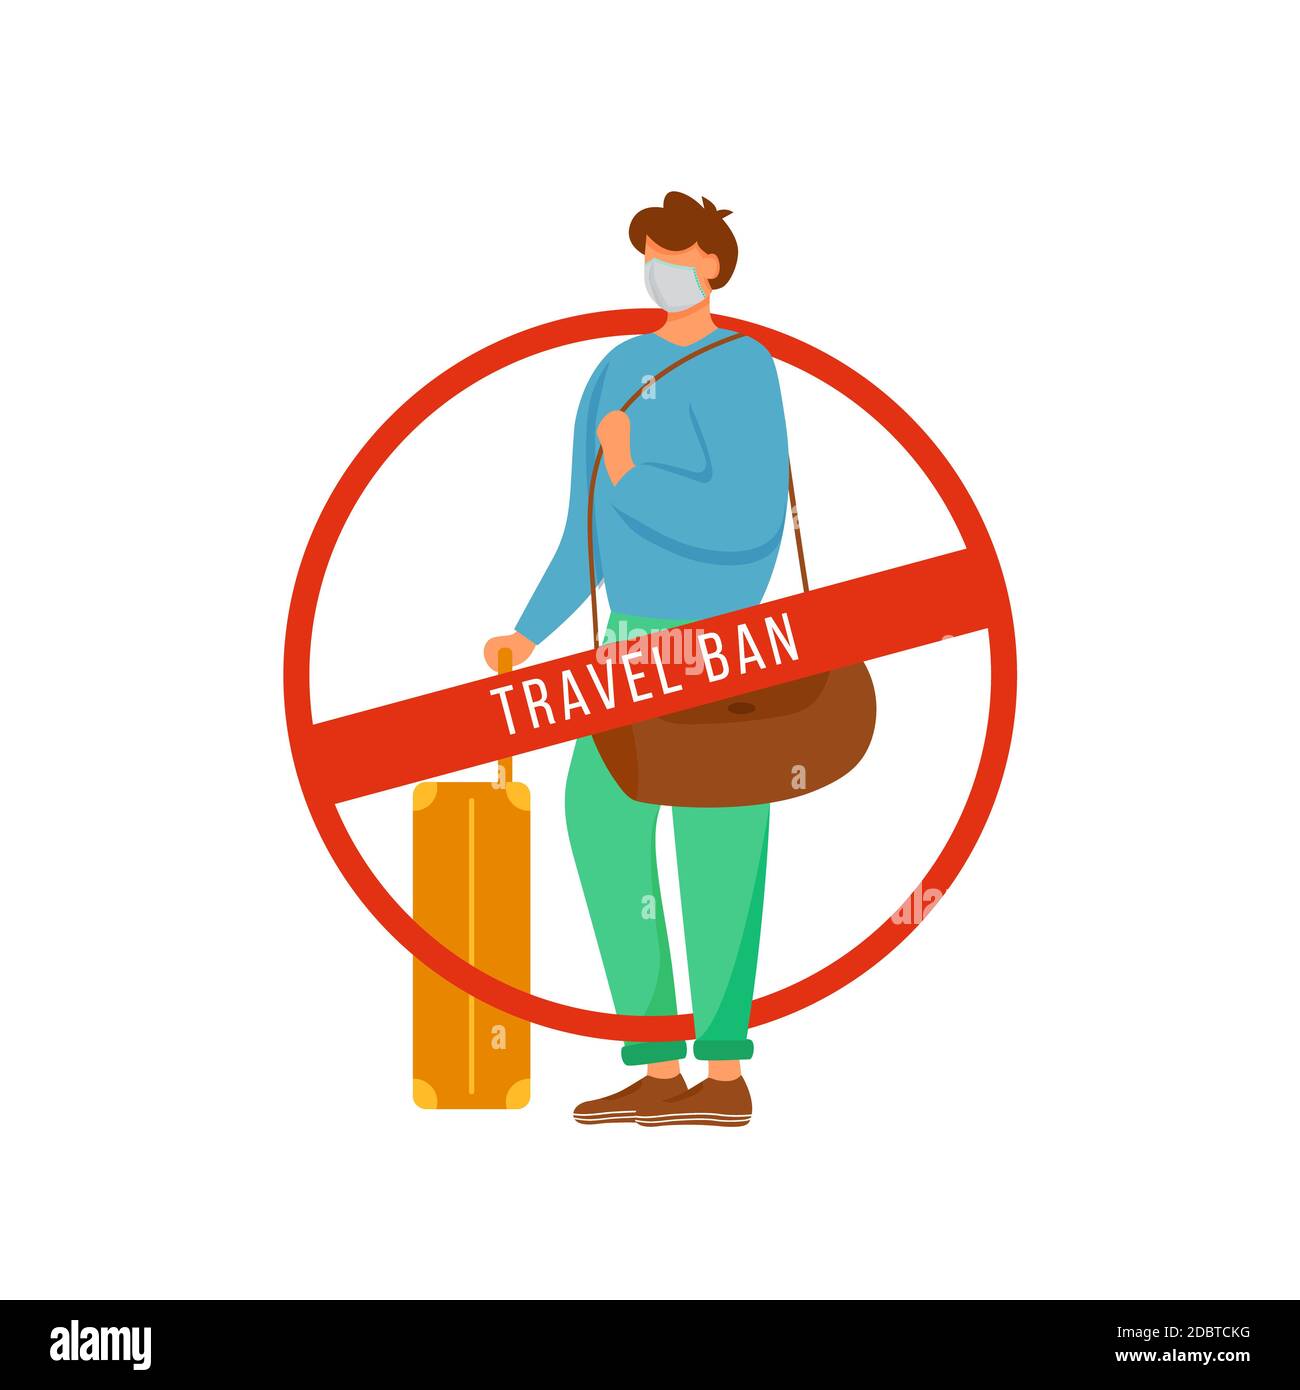 Остановиться передавать. Запрет на путешествия. Запрещено путешествие. Ограничение иллюстрация. Ограничение путешествий.